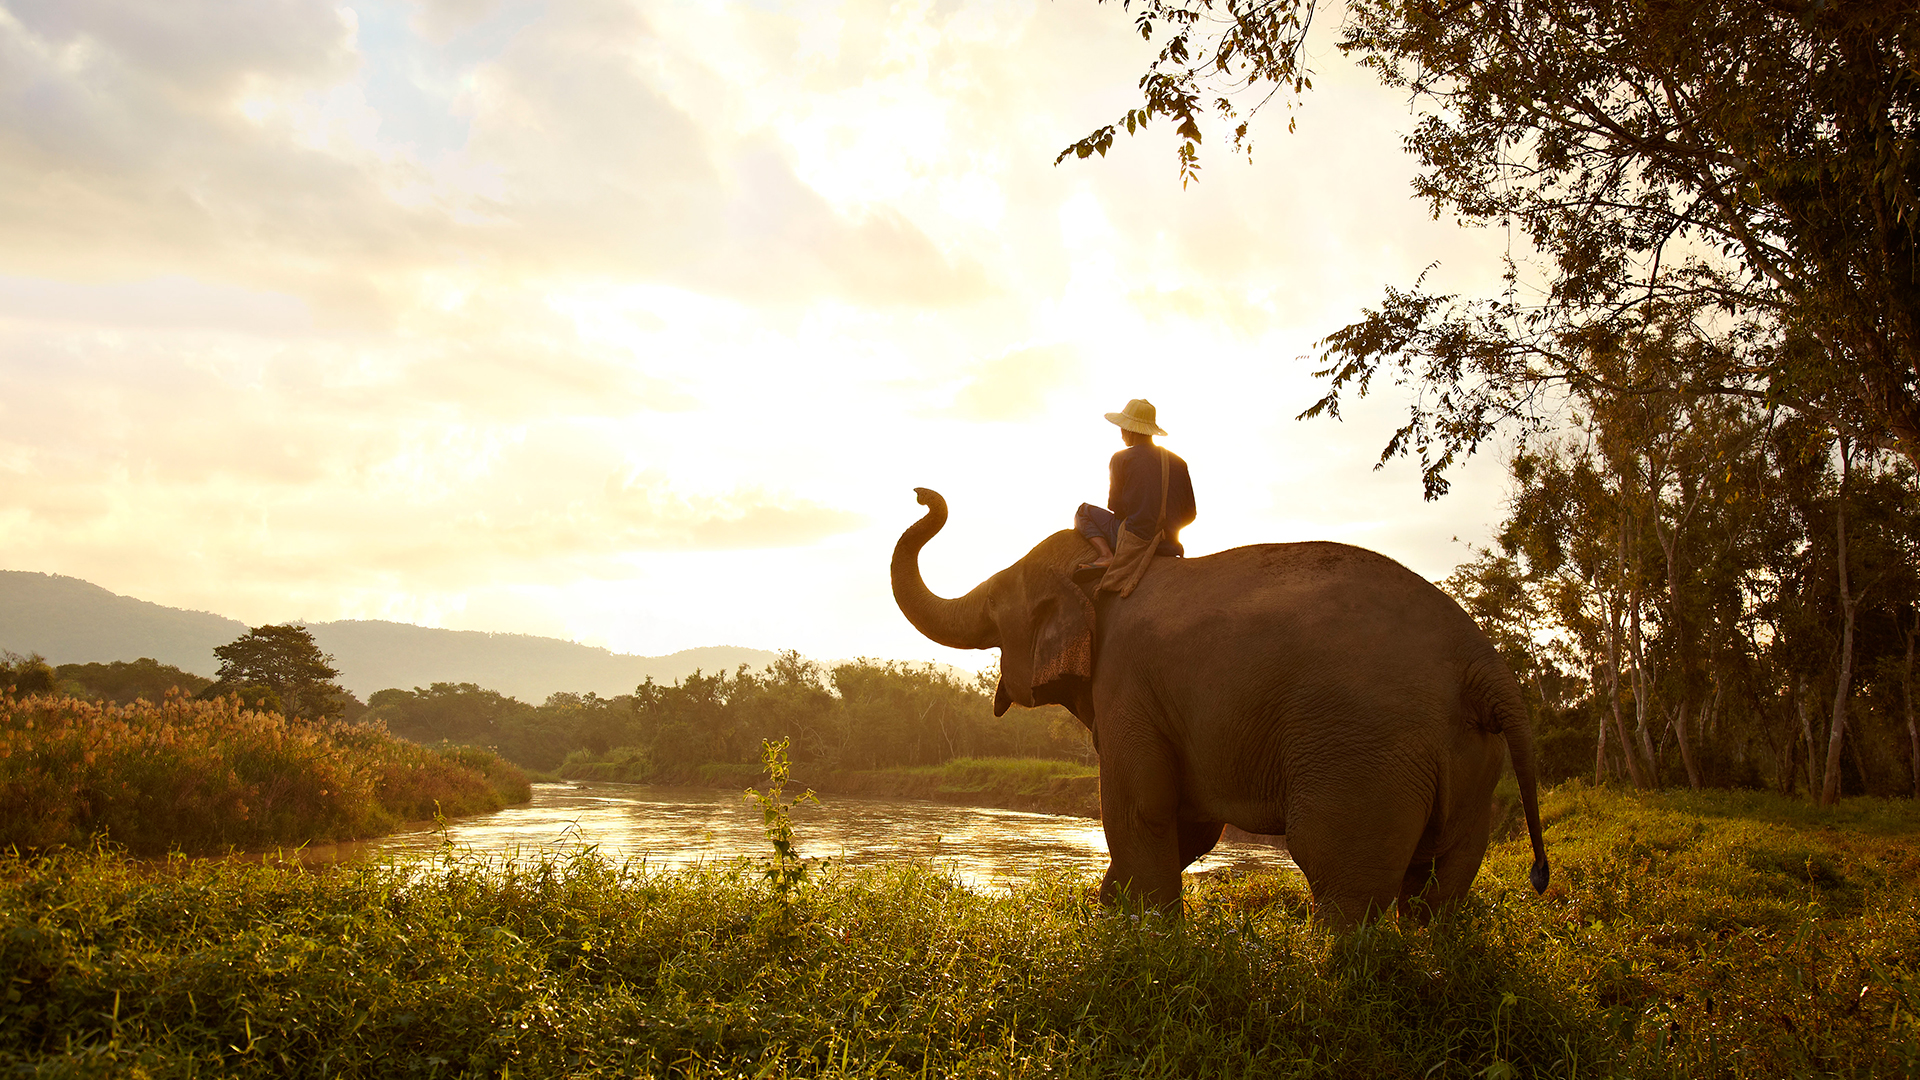 Descarga gratuita de fondo de pantalla para móvil de Animales, Elefantes, Elefante Asiático.